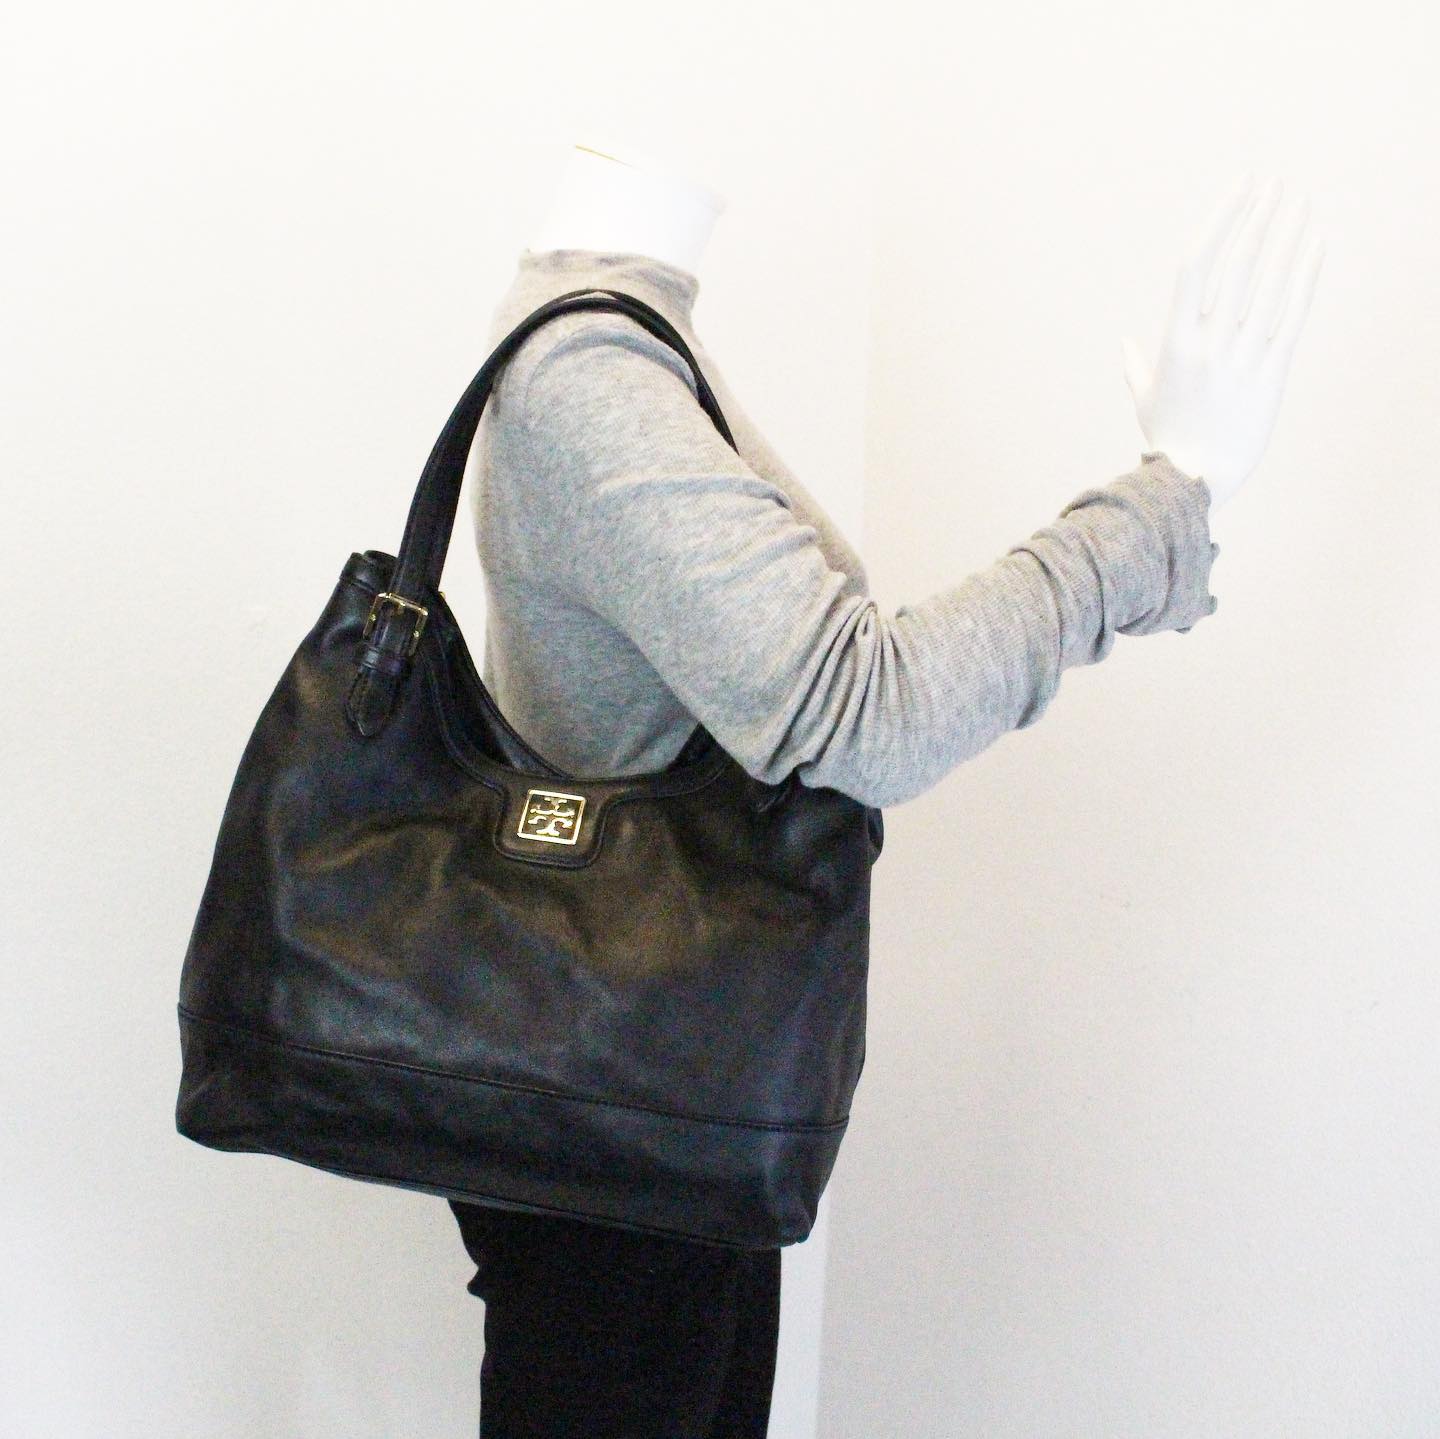 TORY BURCH #31225 Black Leather Shoulder Bag